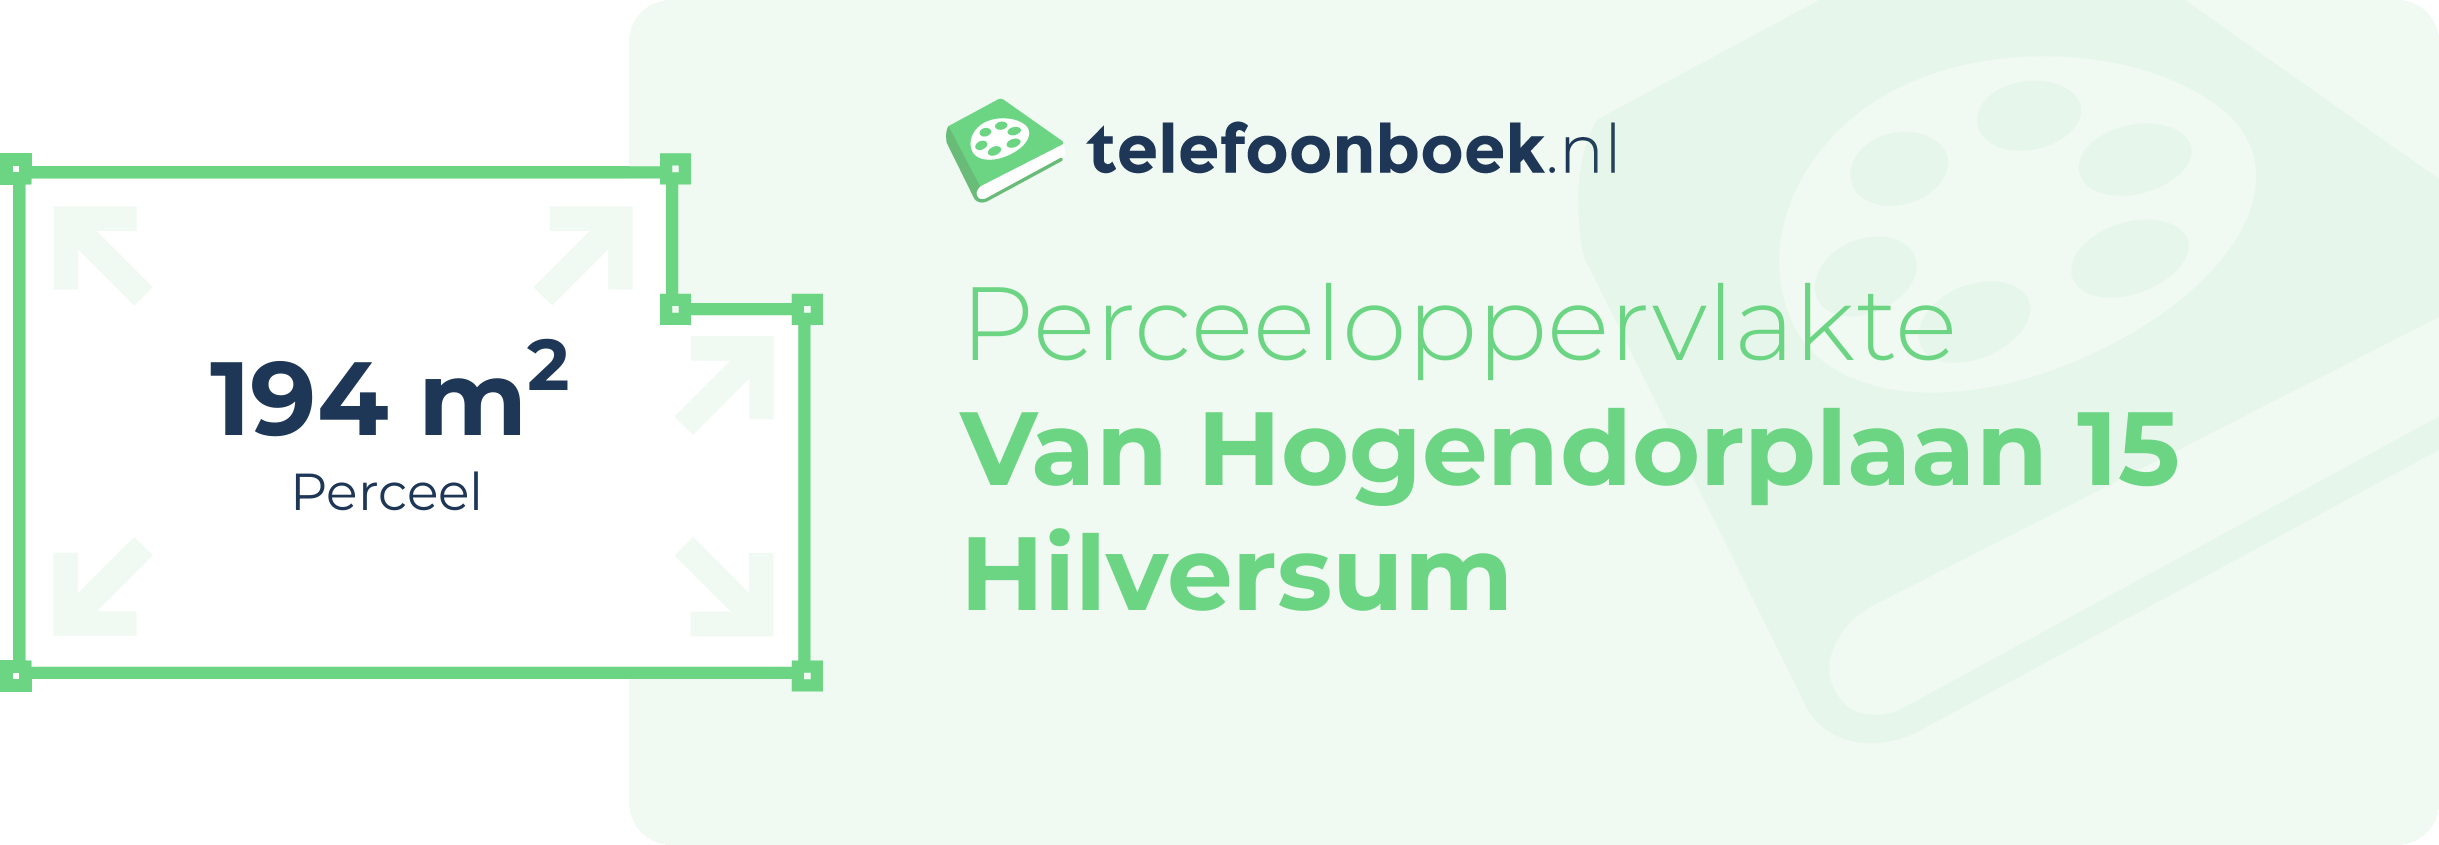 Perceeloppervlakte Van Hogendorplaan 15 Hilversum